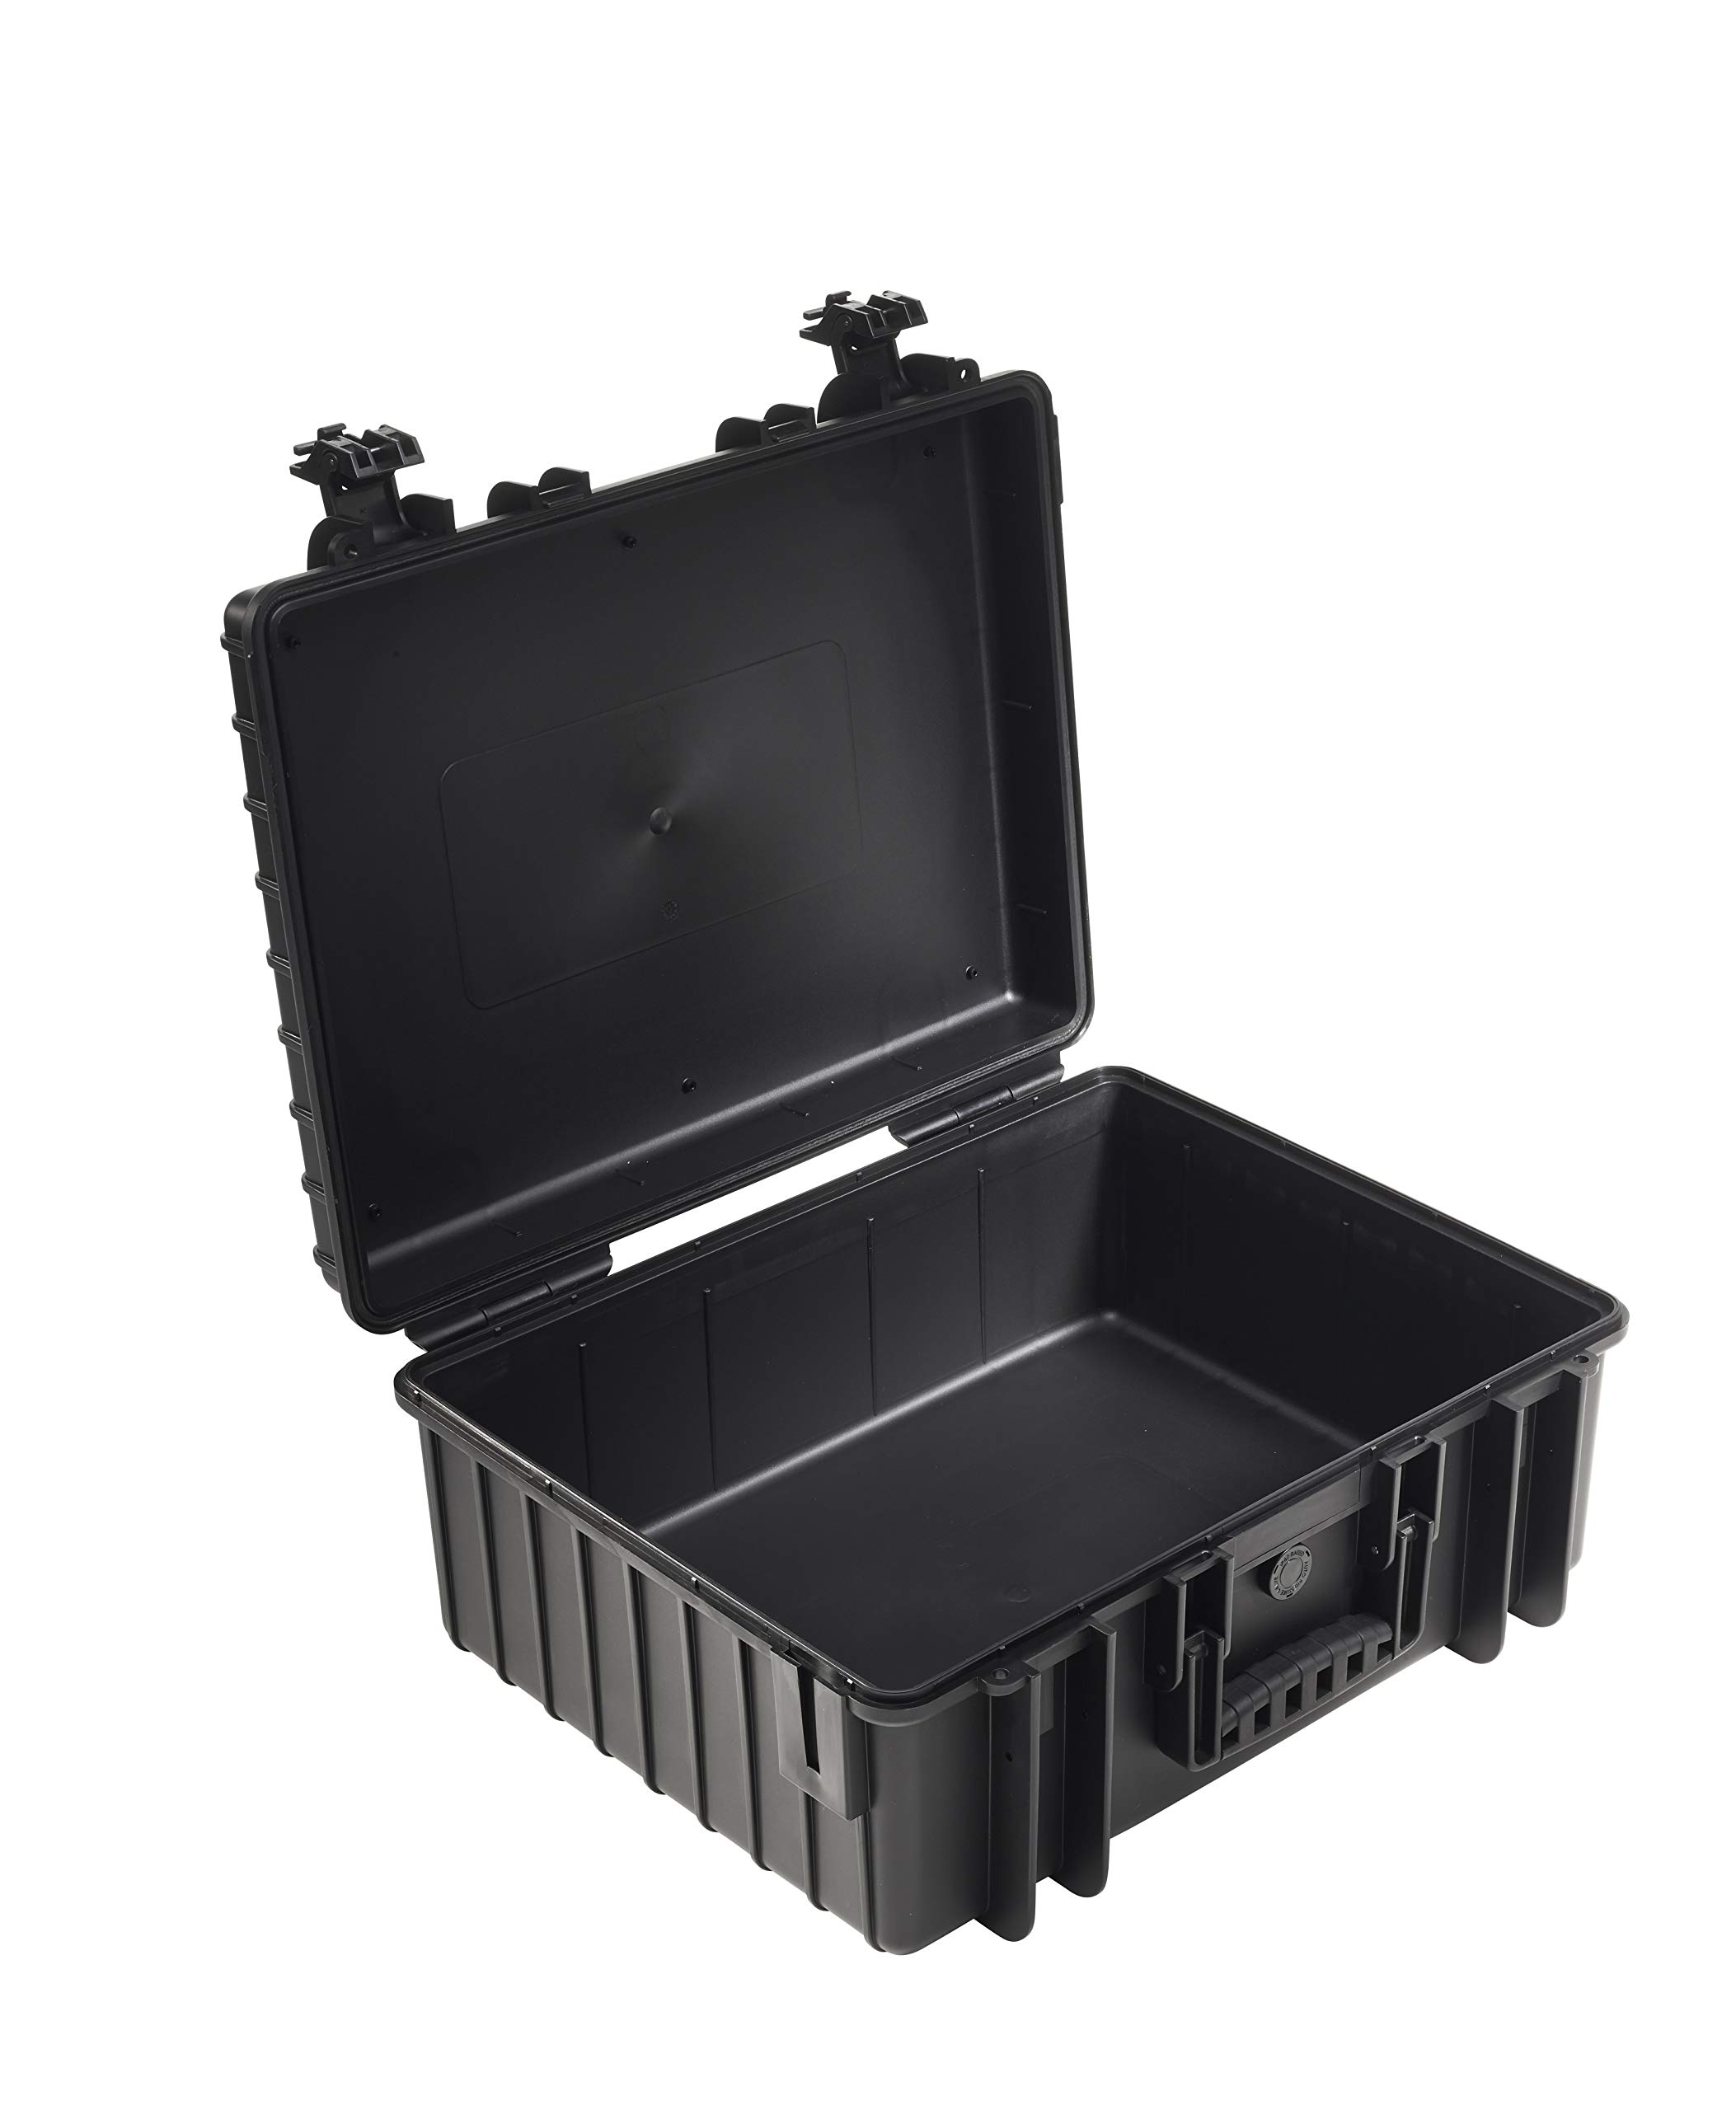 B&W Transportkoffer Outdoor - Typ 6000 Schwarz - wasserdicht nach IP67 Zertifizierung, staubdicht, bruchsicher und unverwüstlich